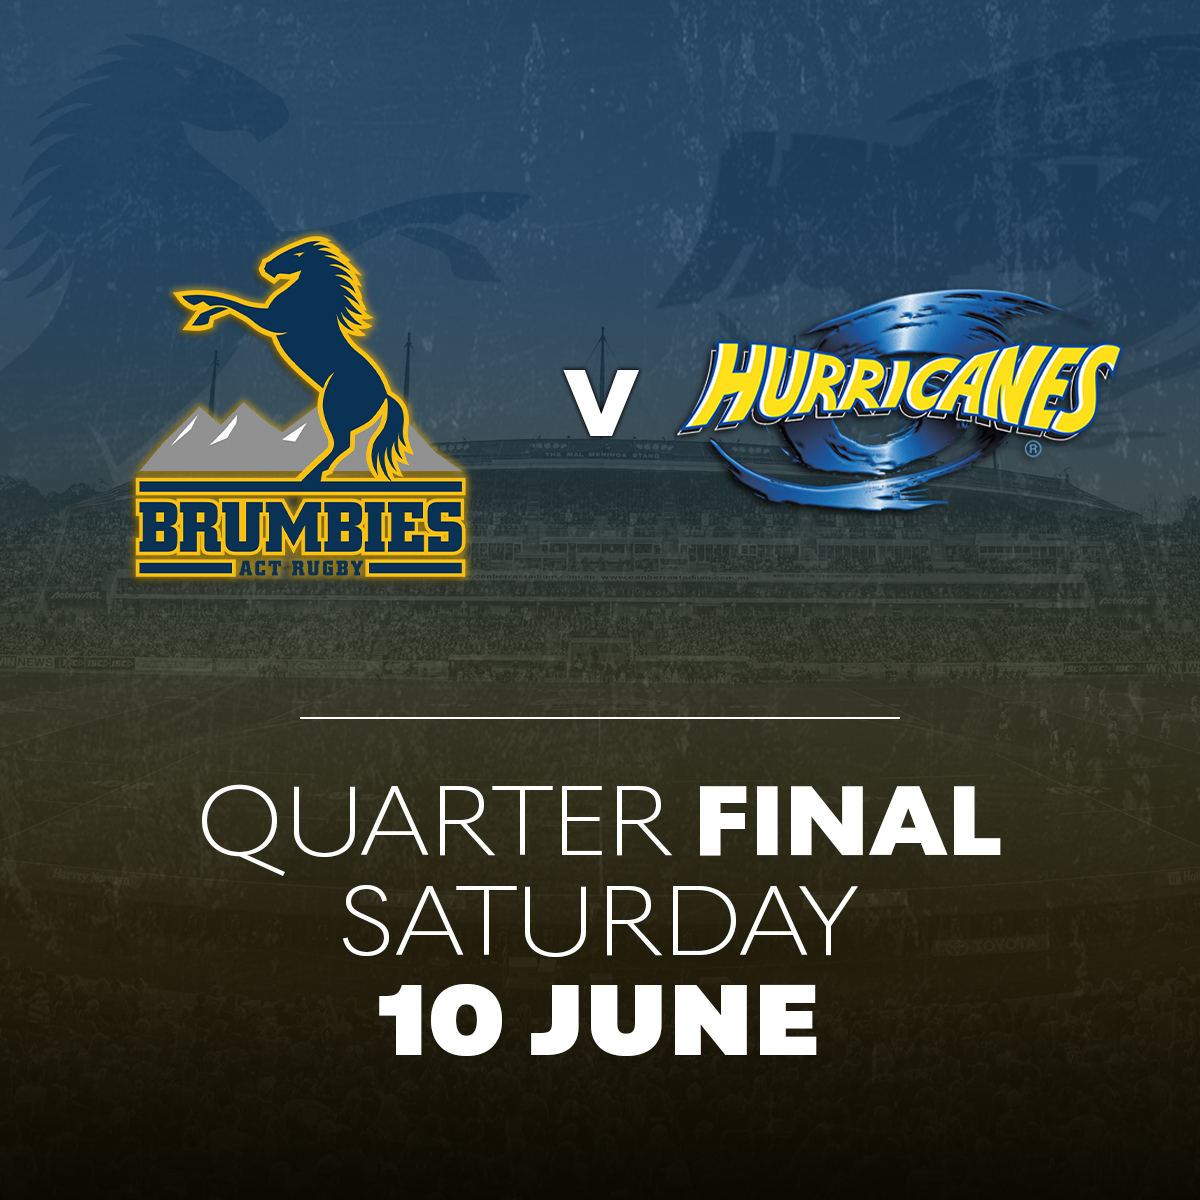 Brumbies v Hurricanes Quarter Final